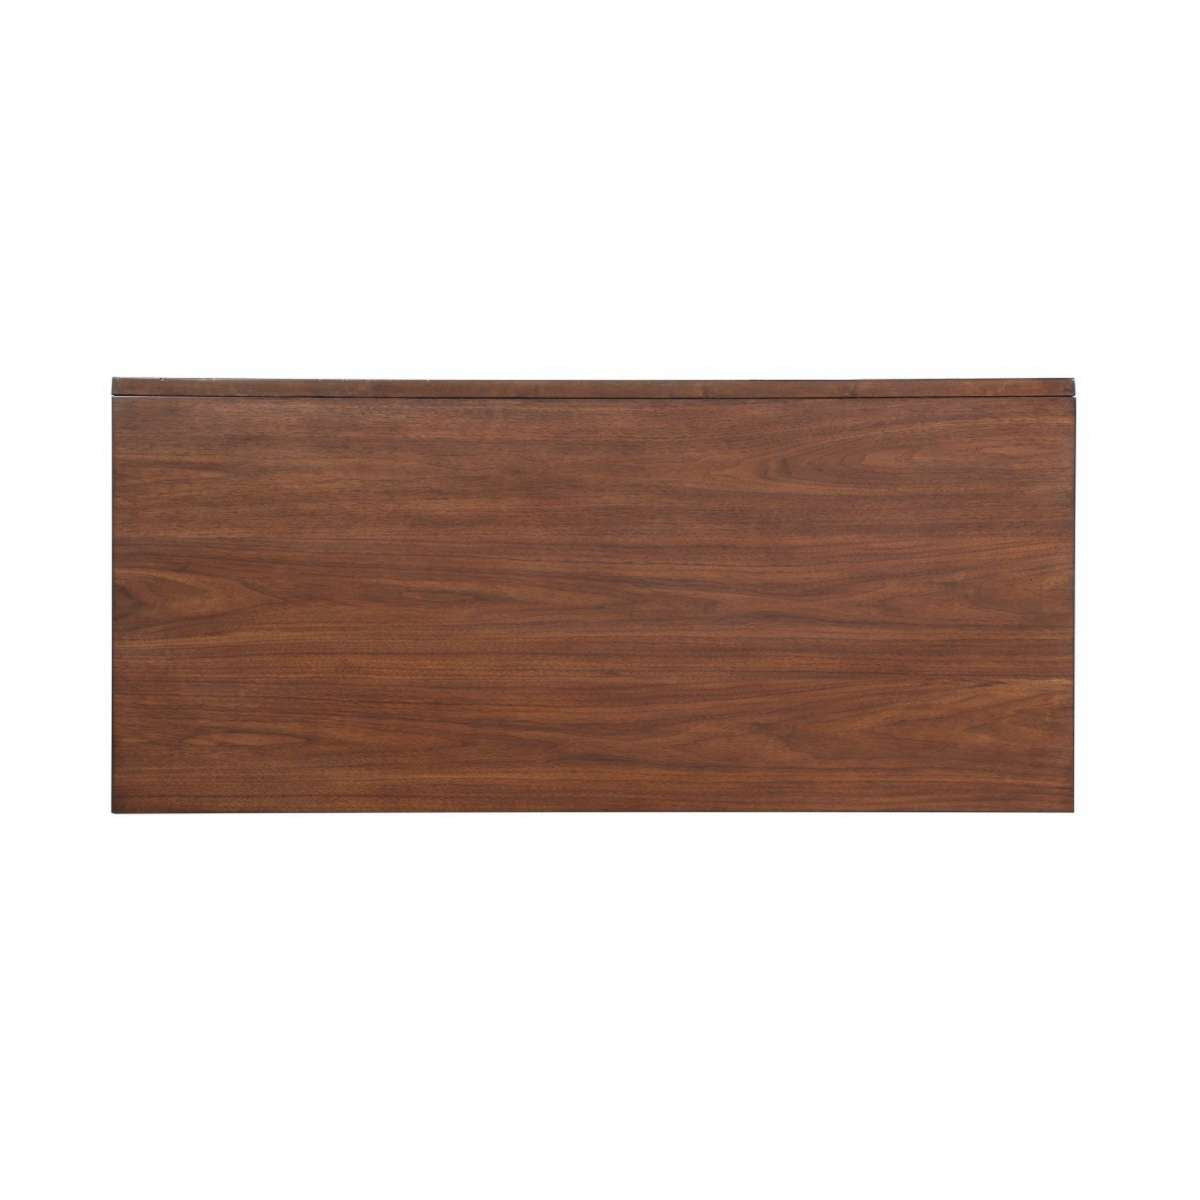 3 Drawer Wooden Writing Desk With Splayed Legs, Walnut Brown By Benzara | Desks |  Modishstore  - 3